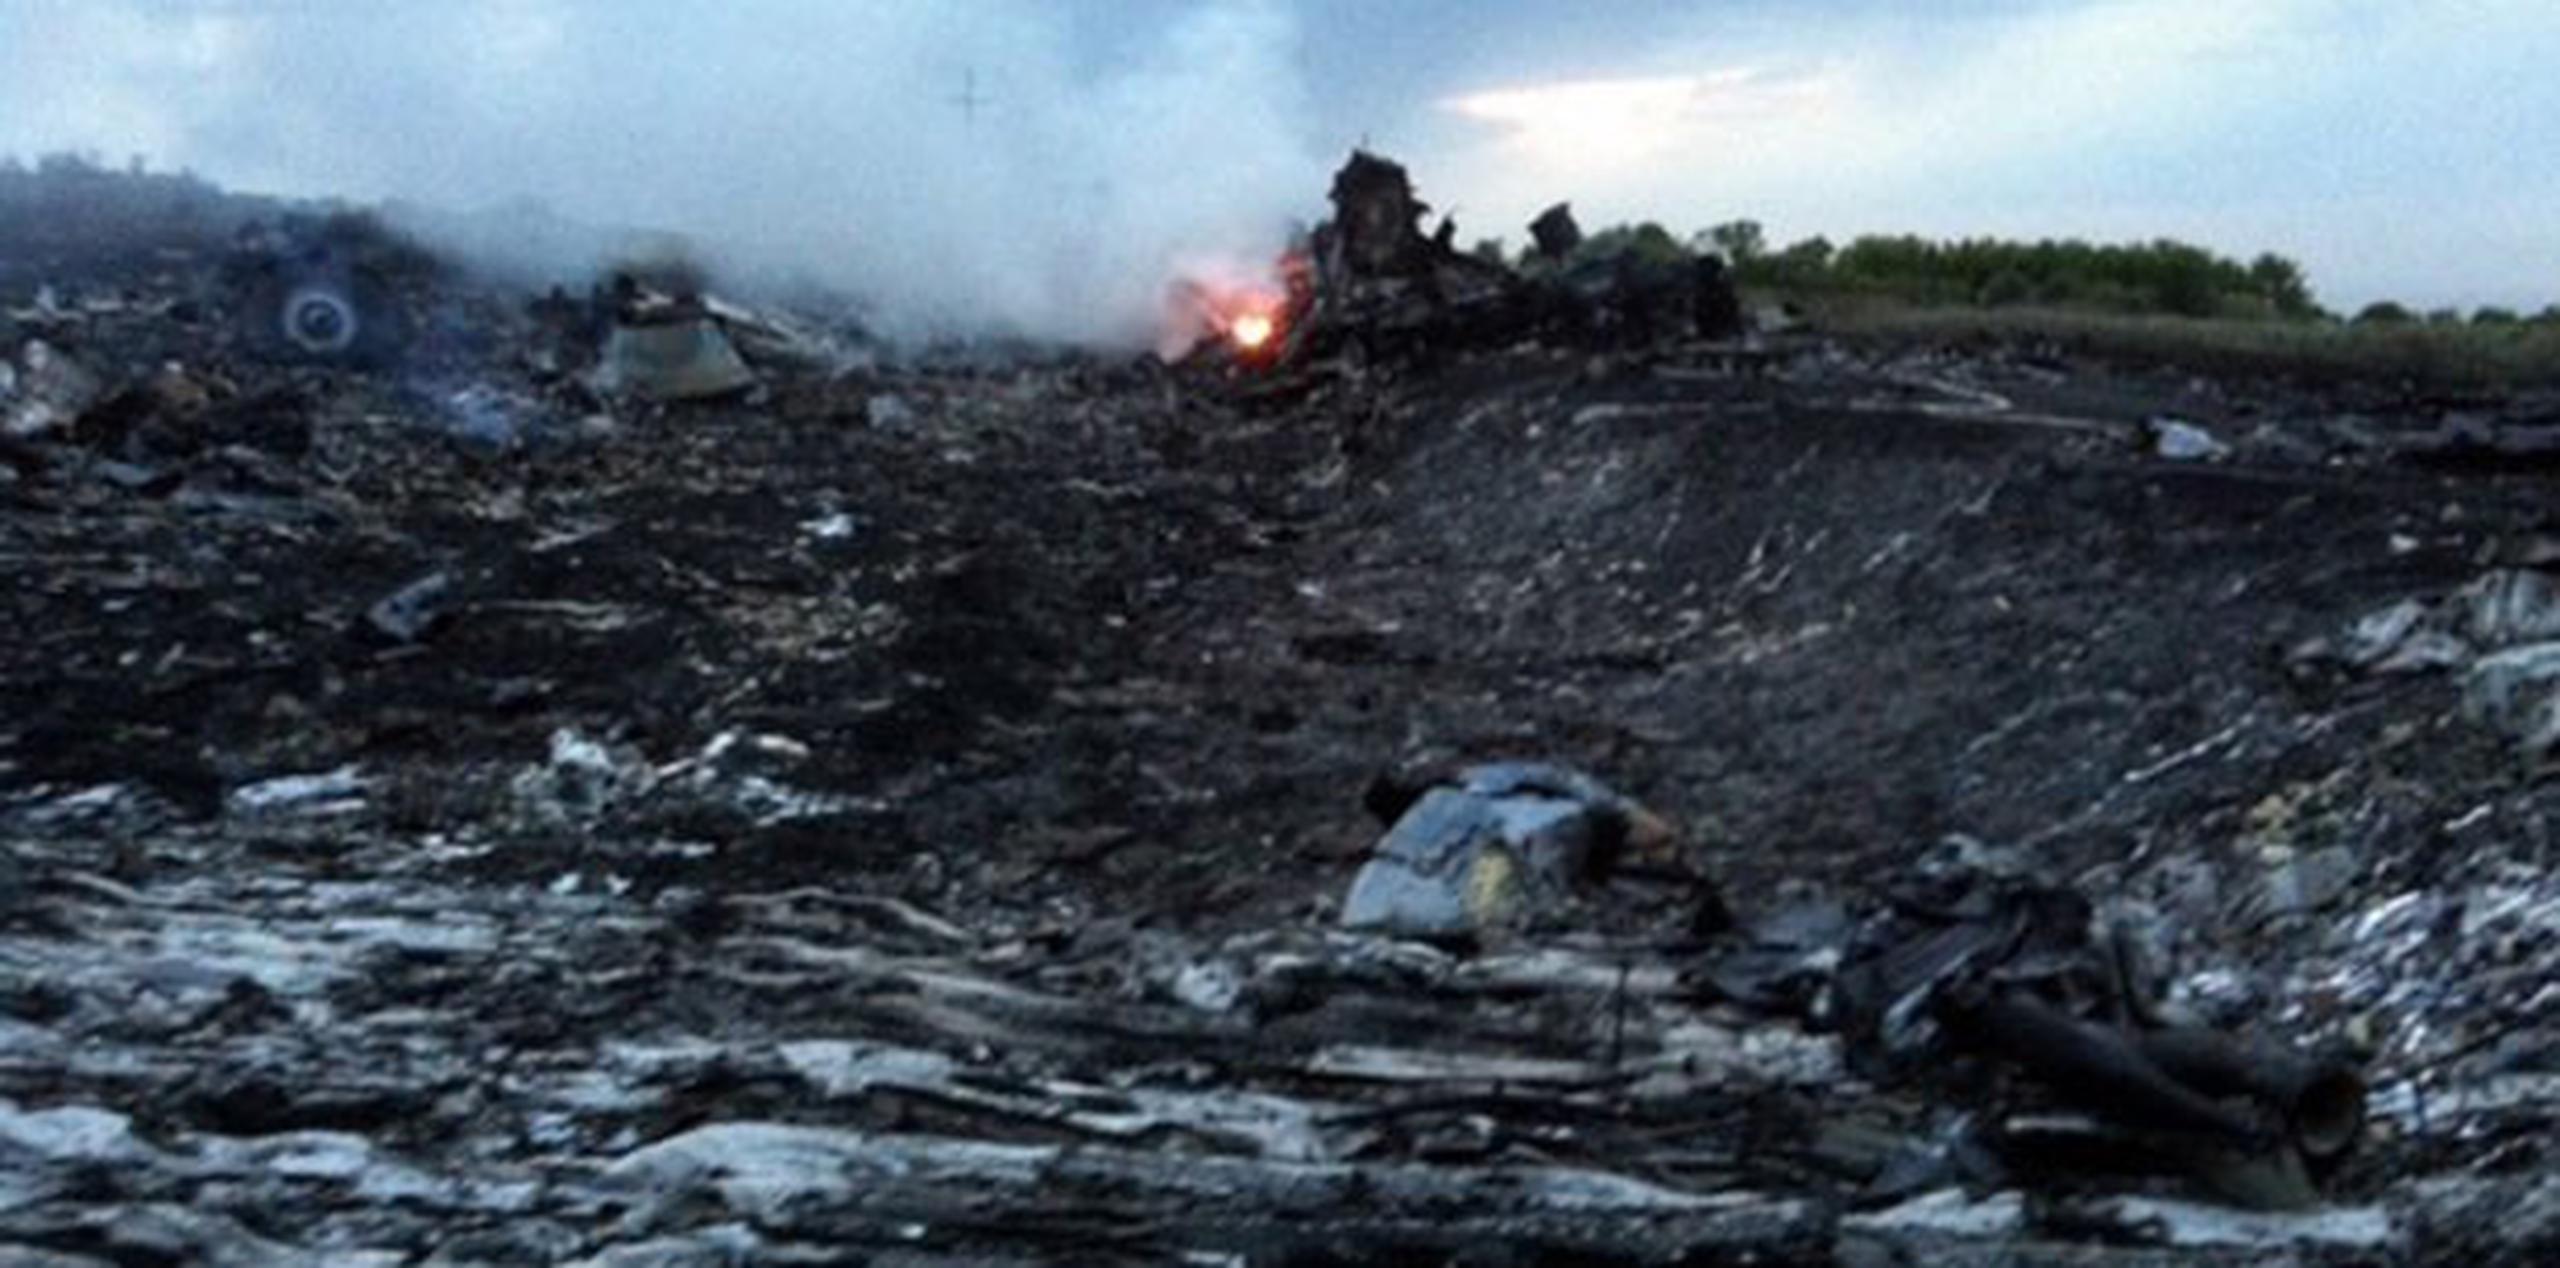 El 17 julio 2014 fallecieron los 298 ocupantes del avión Boeing 777 de Malaysia Airlines derribado por un misil en la zona de conflicto en el este de Ucrania. (Archivo)